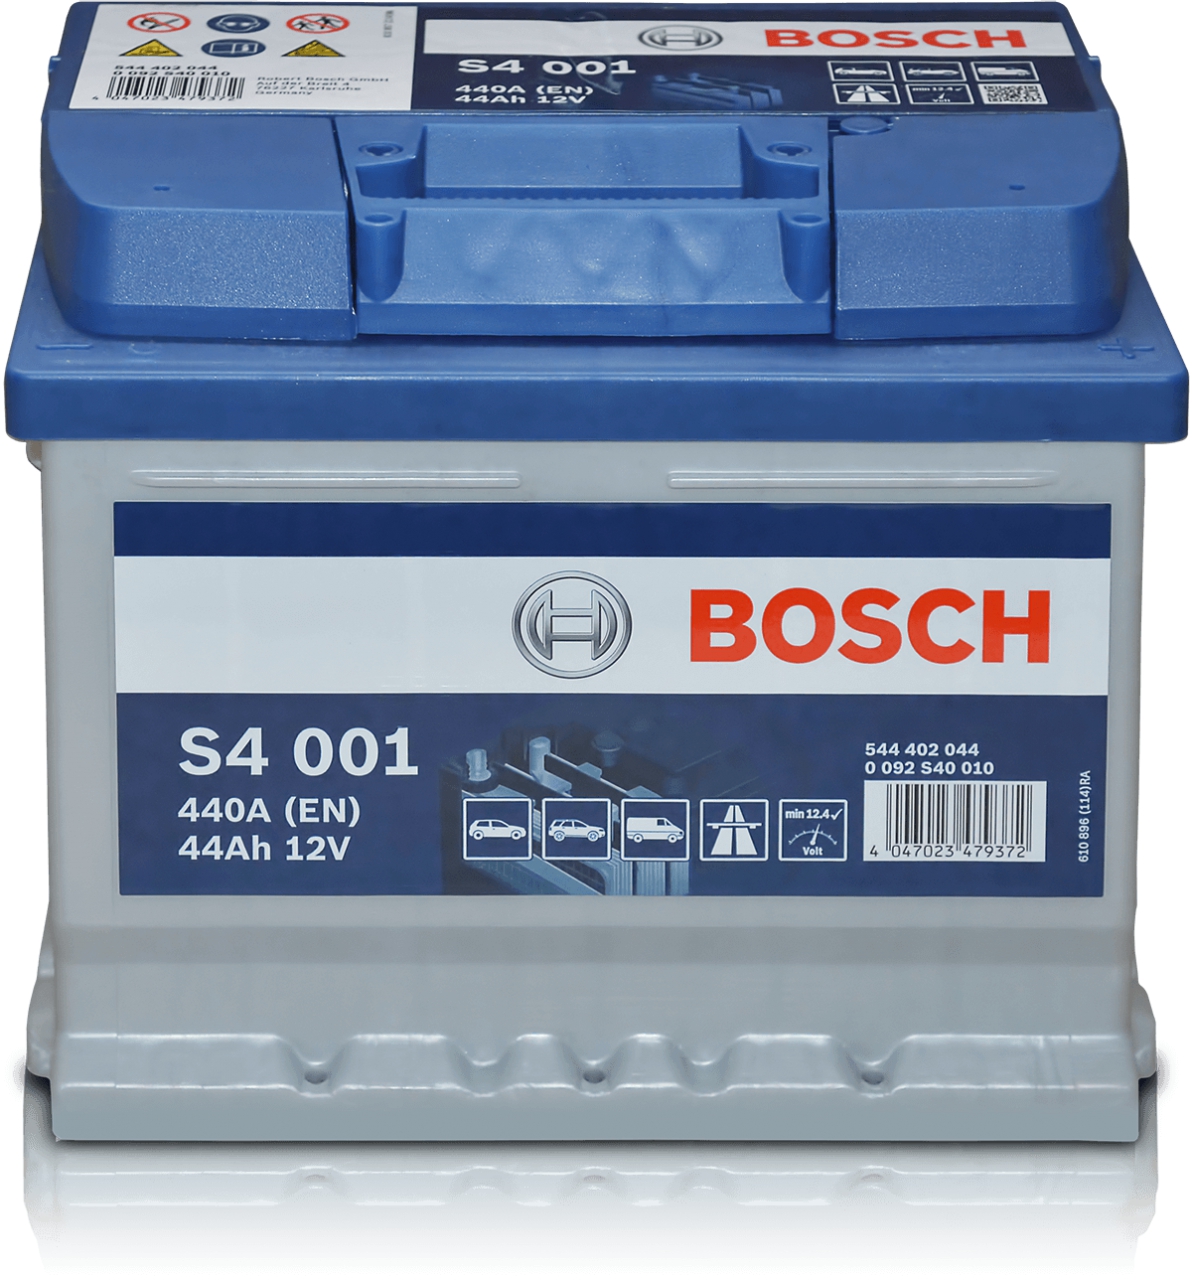 Bosch S4 001